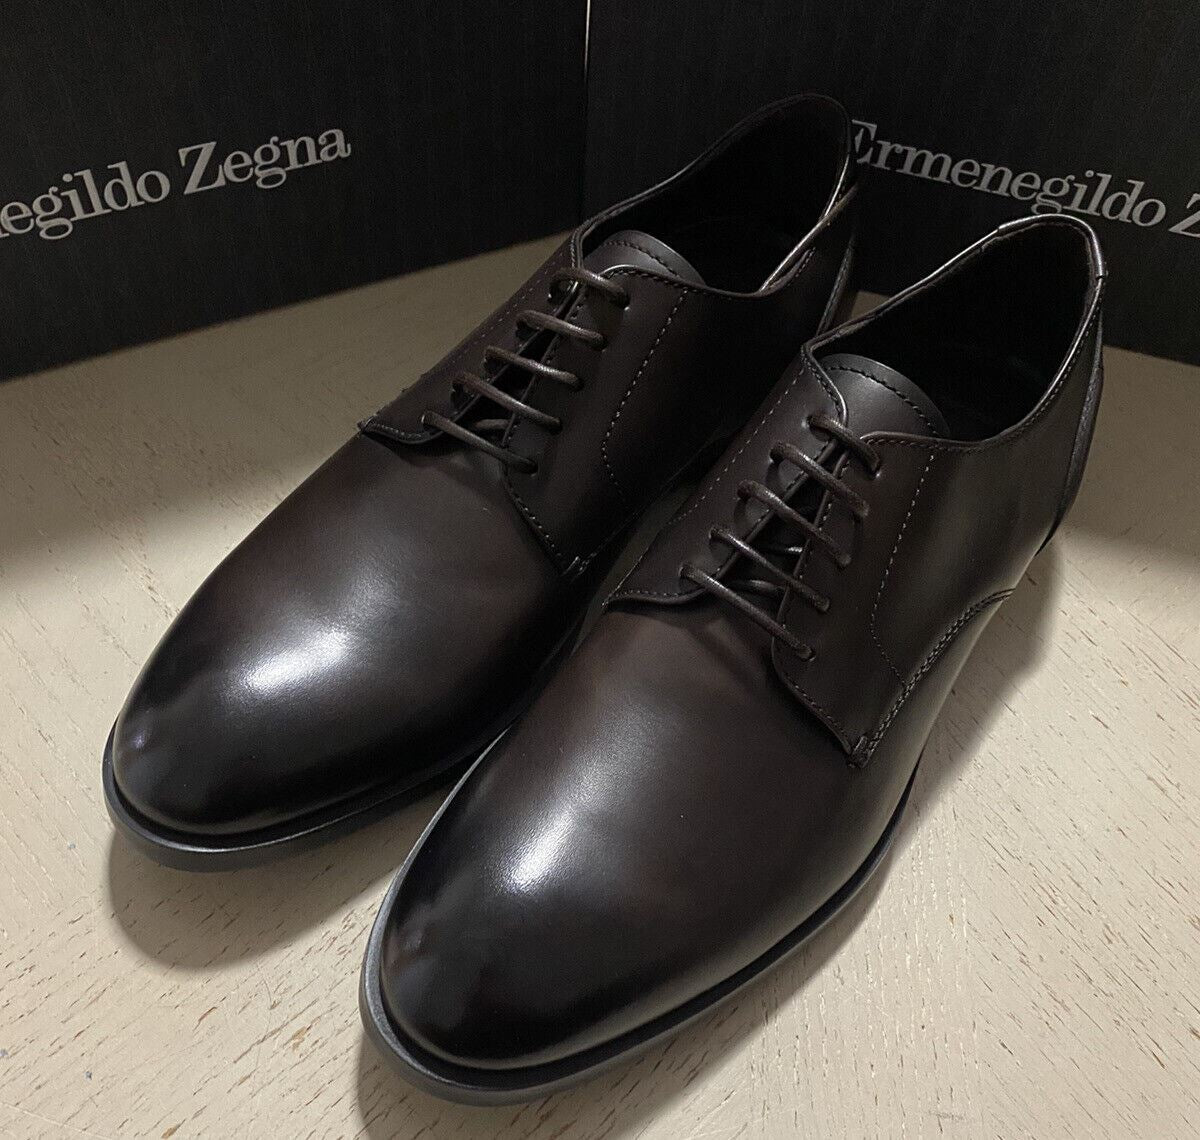 New $675 Ermenegildo Zegna Dress Shoes MD Brown 11 US ( 44 Eu ) Italy